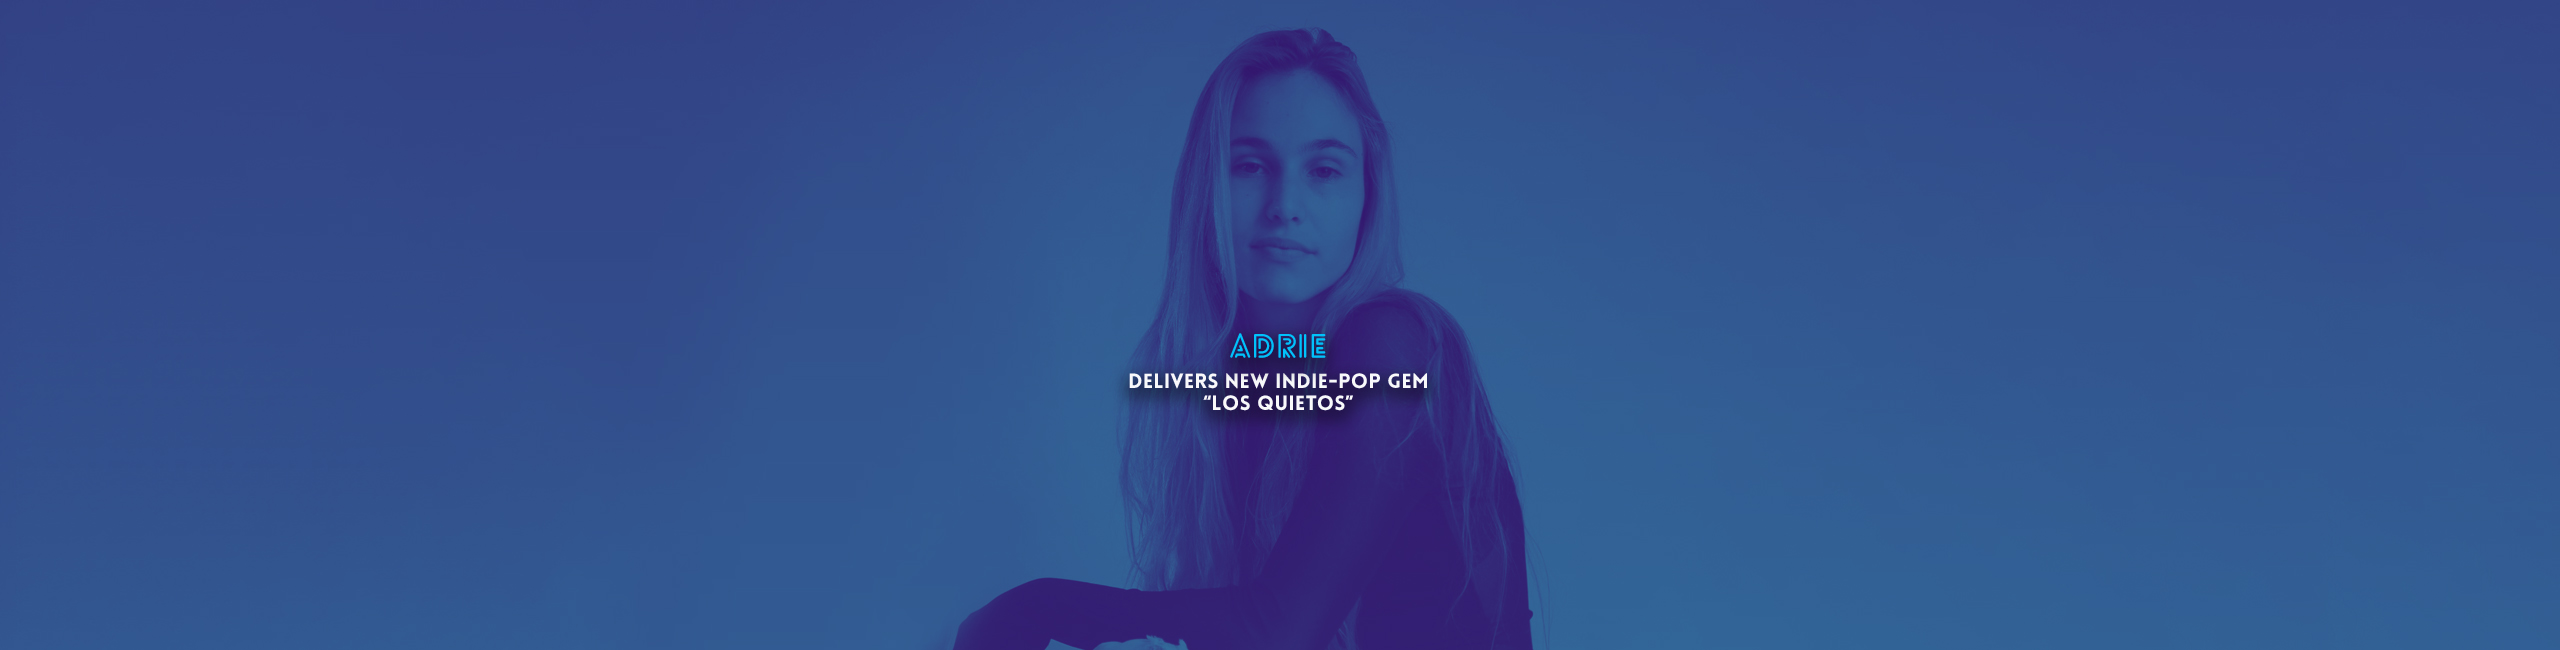 ADRIE Delivers new indie-pop gem “Los Quietos”